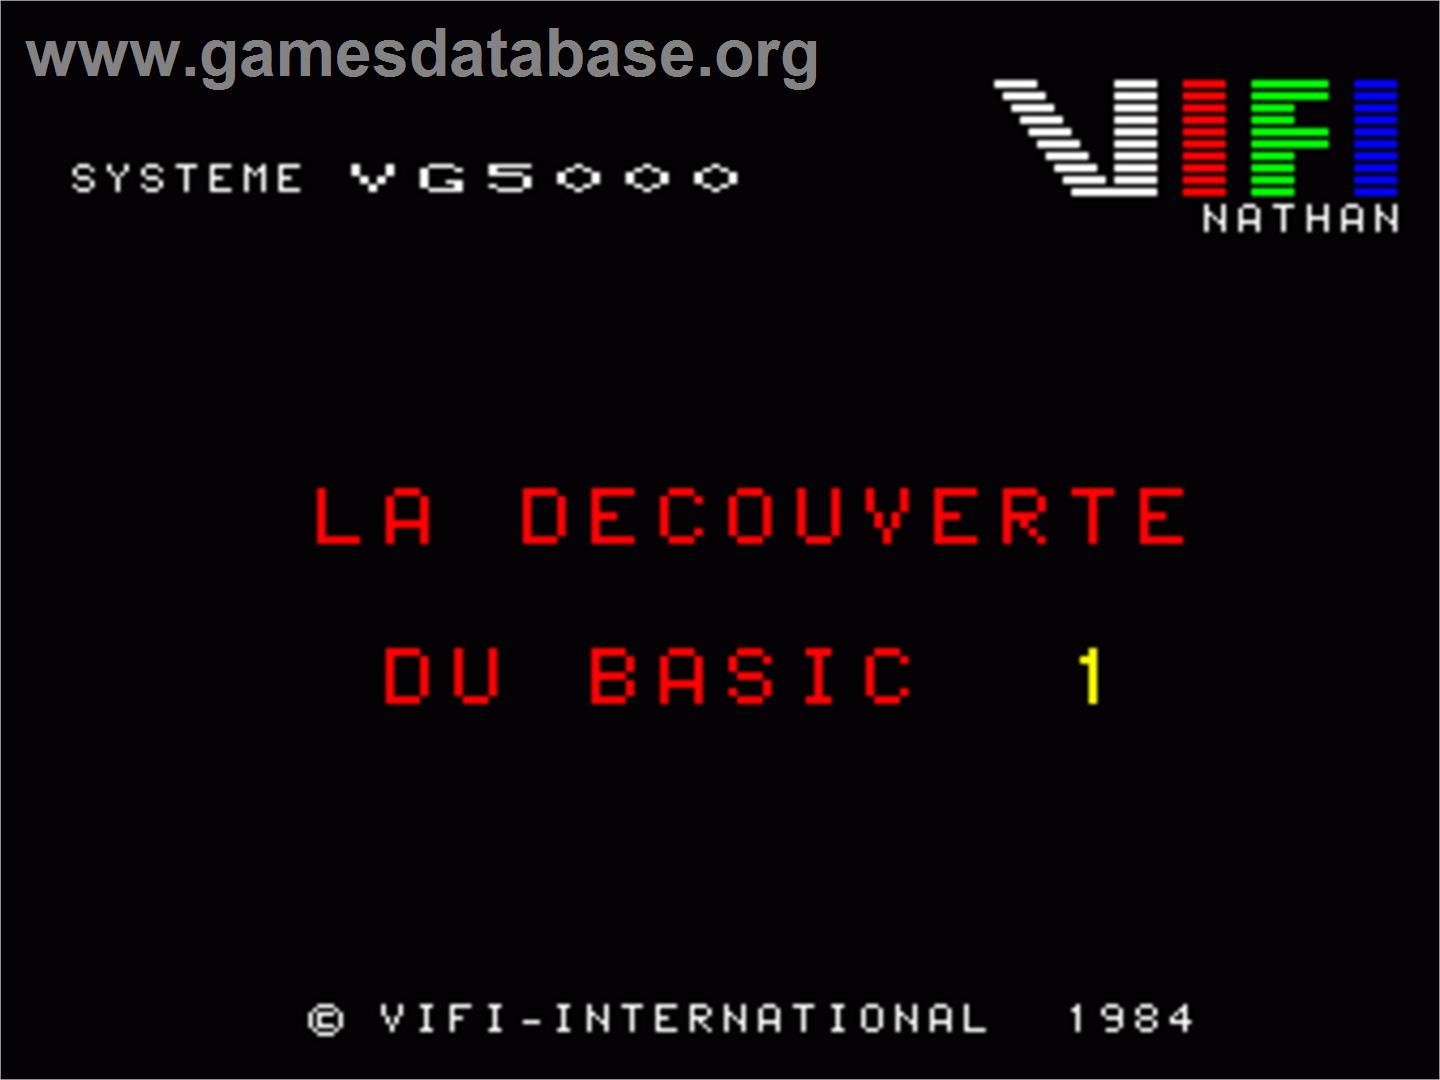 Decouverte Du Basic - Volume 1 - Philips VG 5000 - Artwork - Title Screen